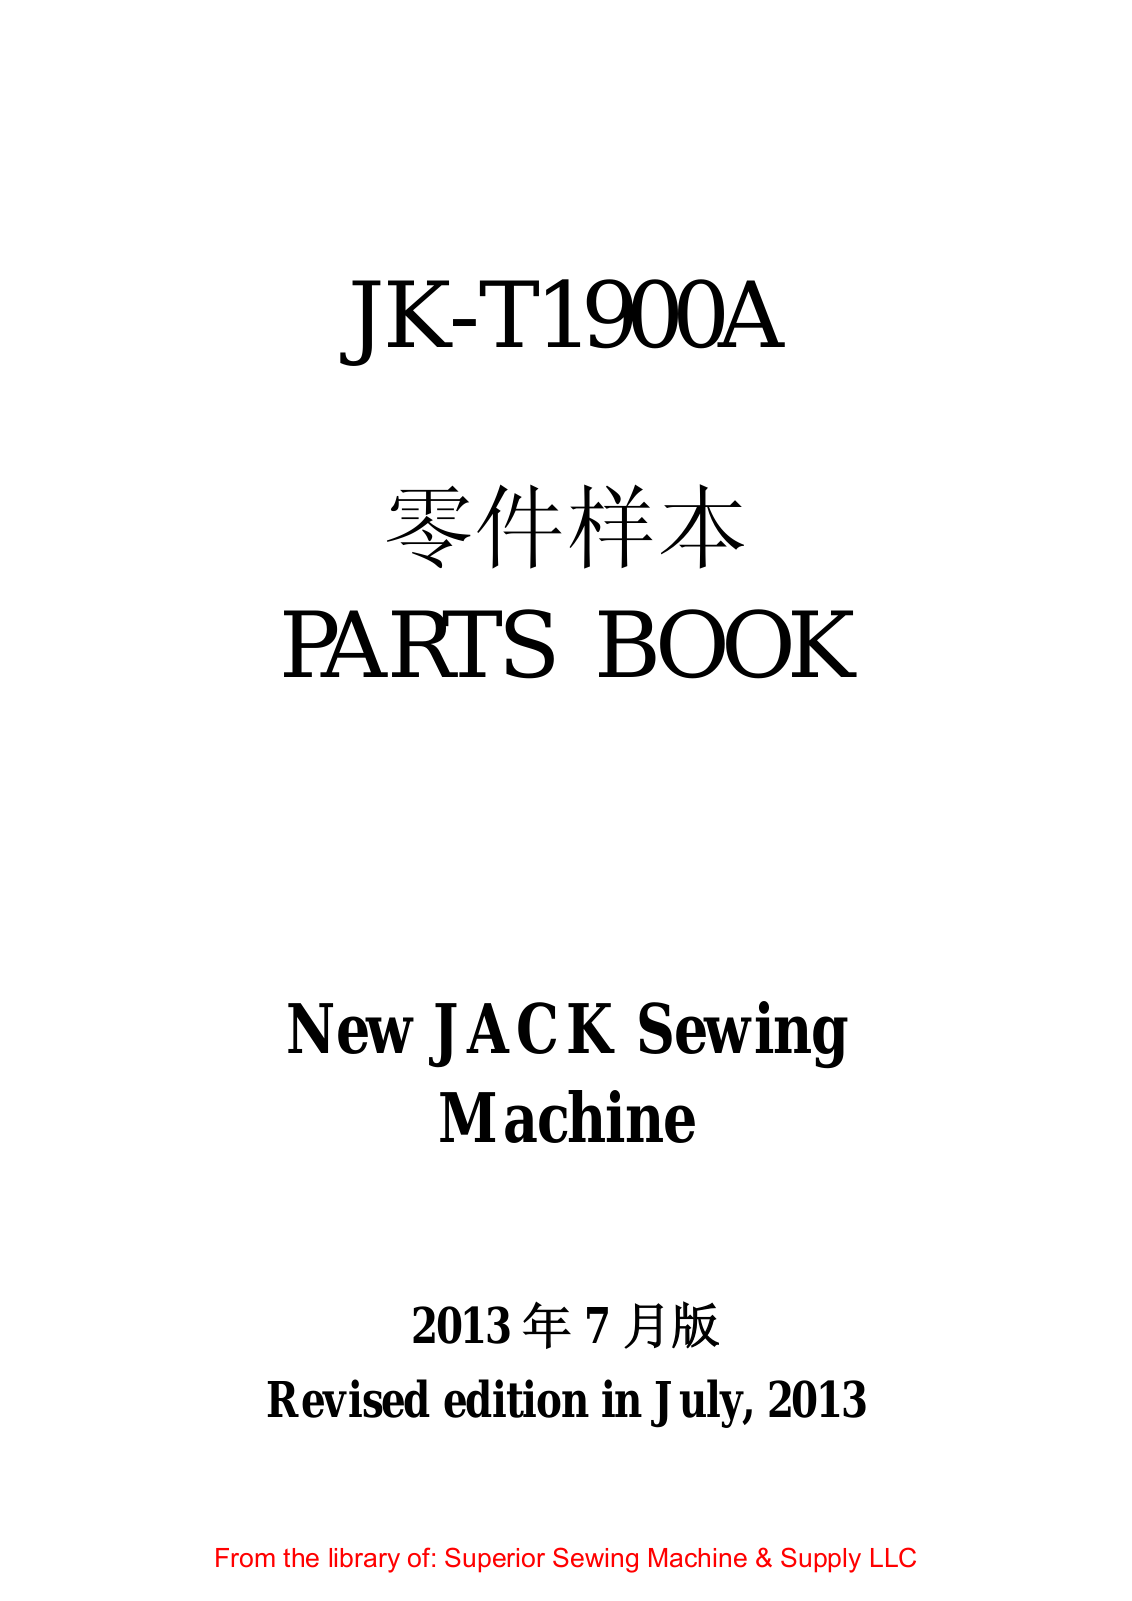 Jack JK-T1900A Manual